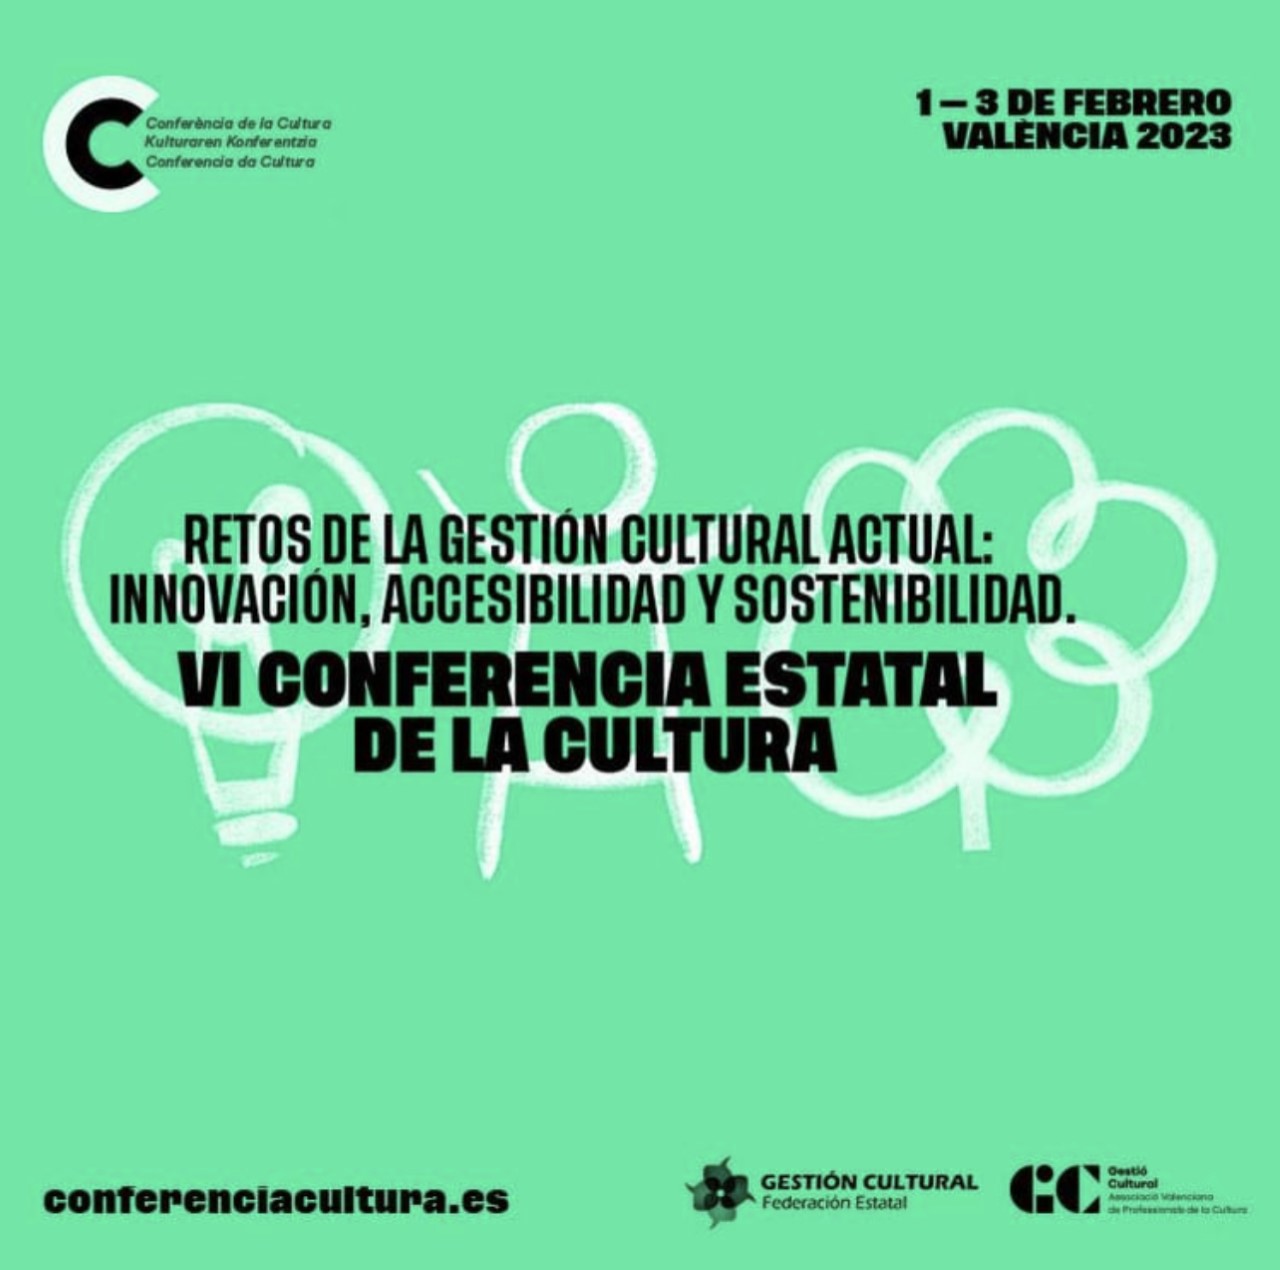 Valencia se convierte mañana en el epicentro de la gestión cultural